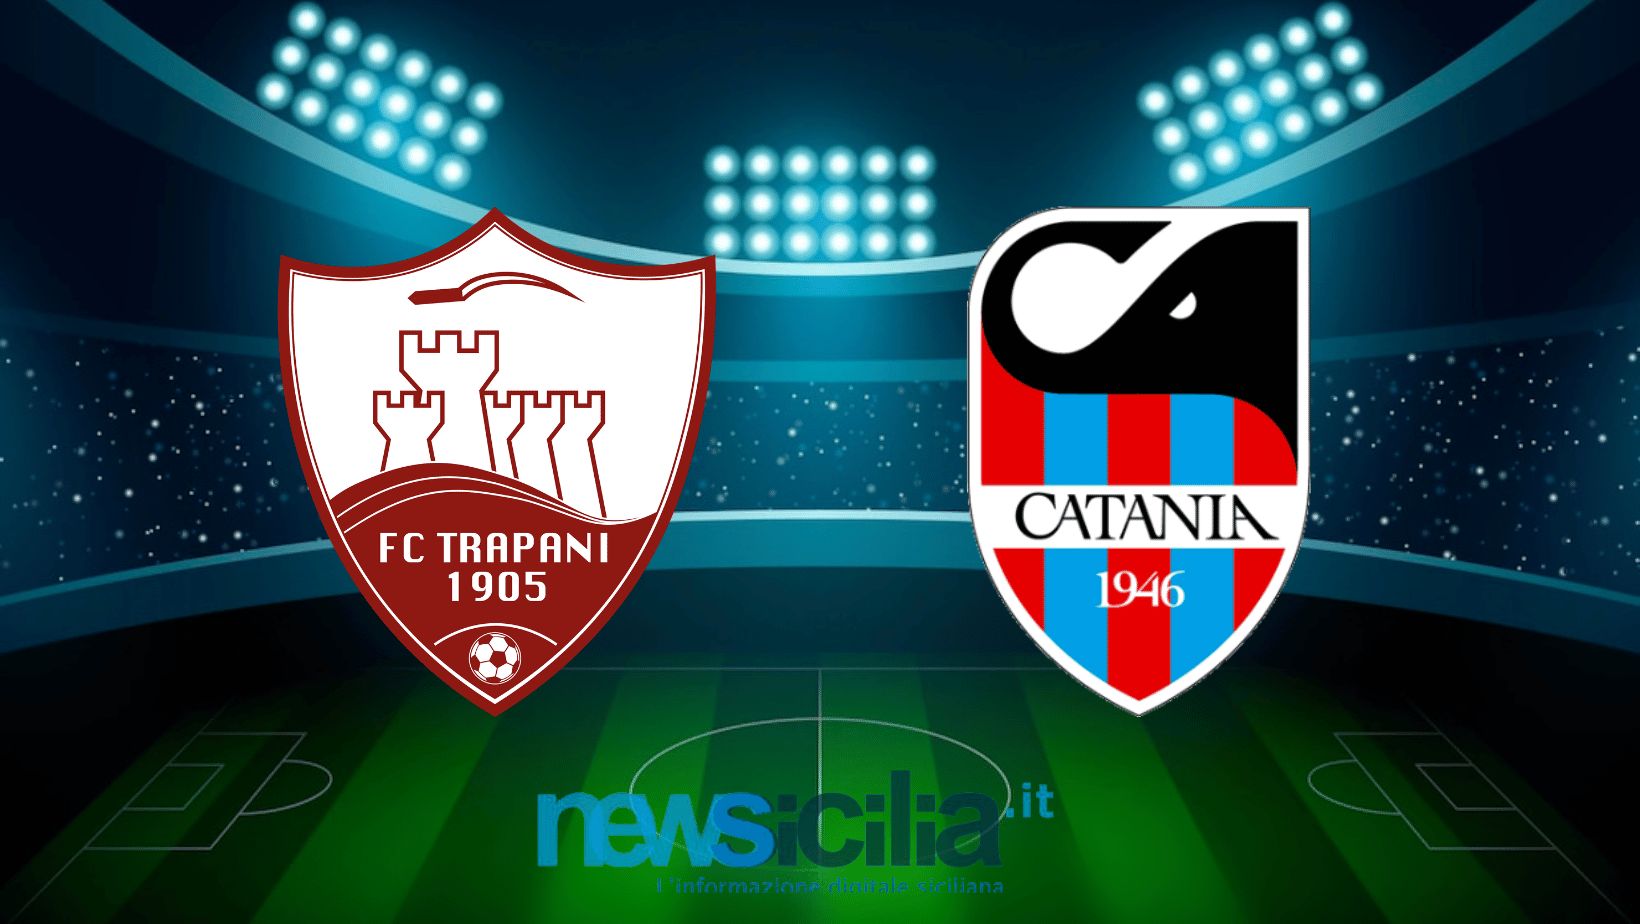 Trapani – Catania SSD 1 – 0: Trapani campo tabù, si finisce con una sconfitta.